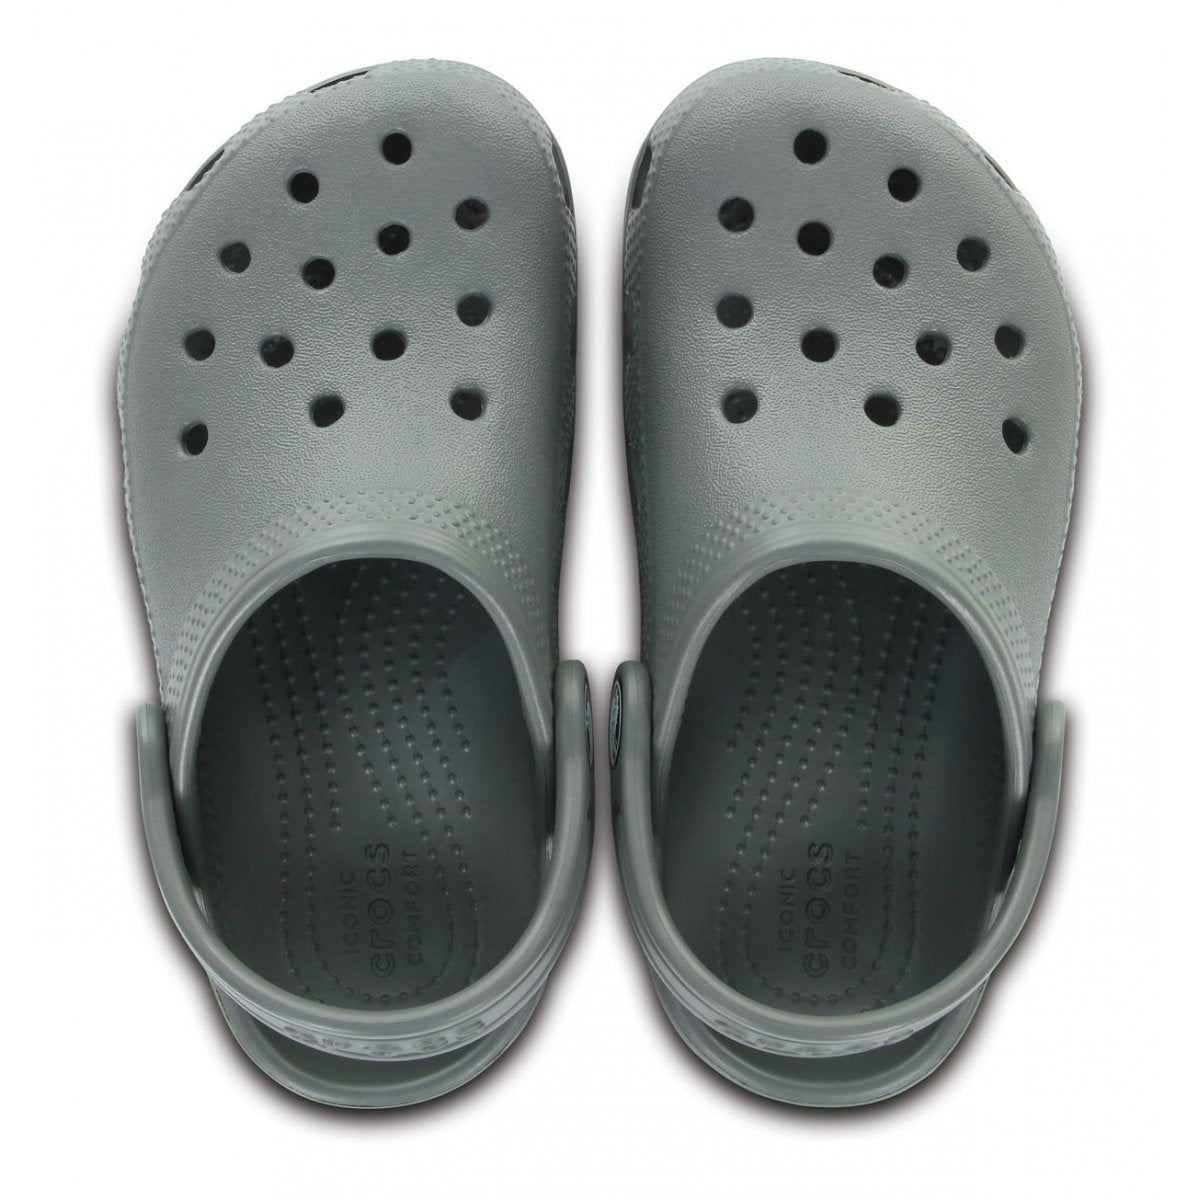 Crocs Classic Clog K 204536-0DA slate grey